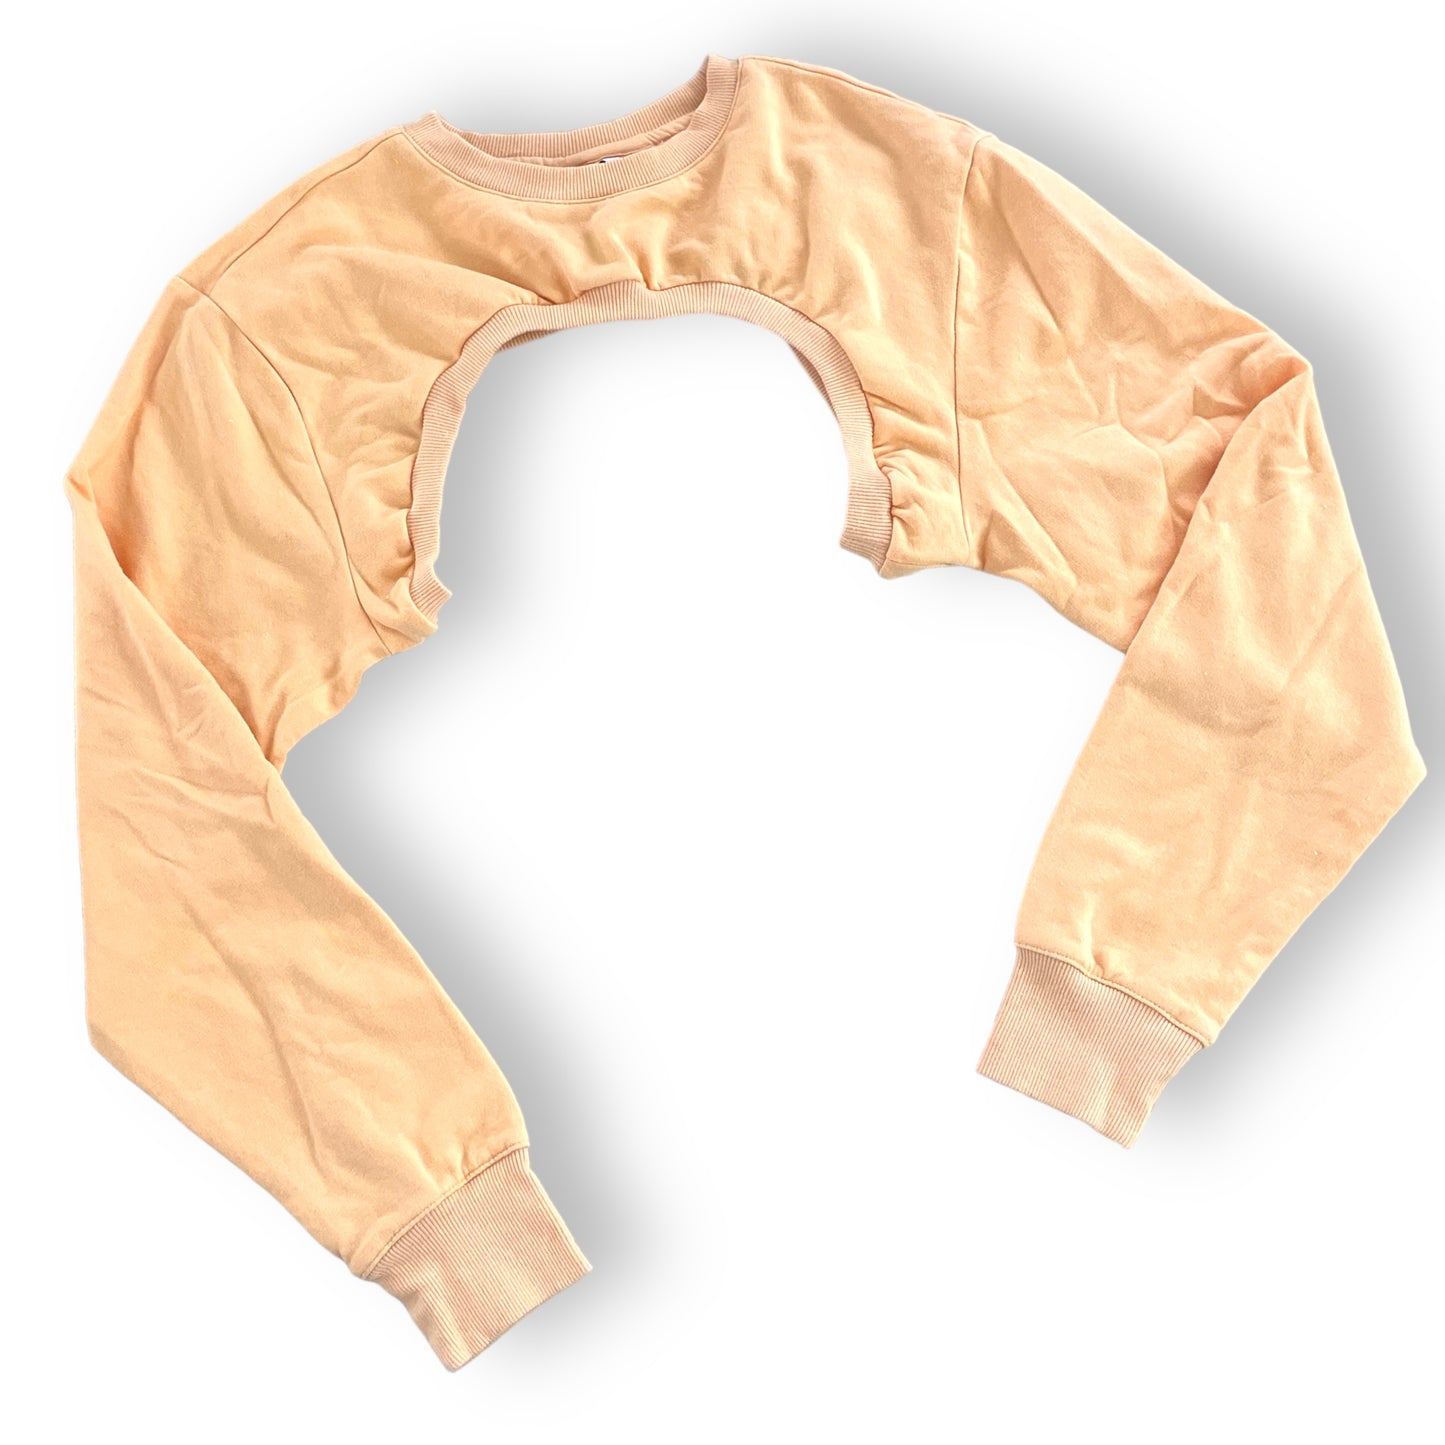 Peach corset No. 61 / Size L/XL